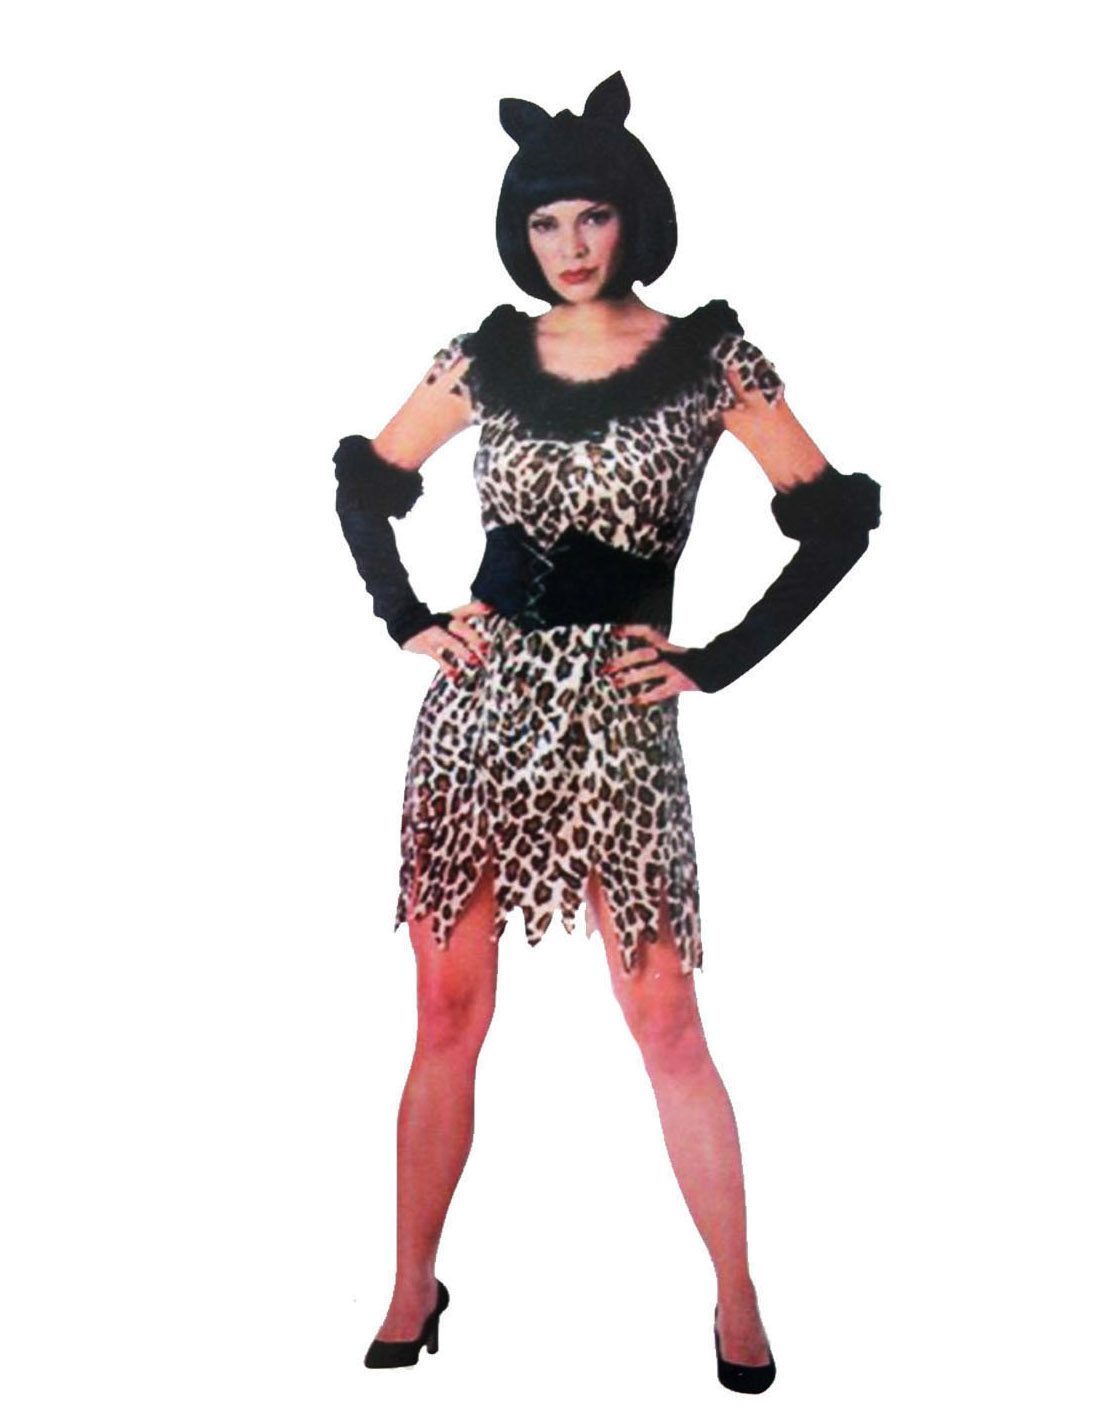 Yetişkin Bayan Leopar Kostümü  - Kedi Kız Kostümü - Taş Devri Kostümü (4172)